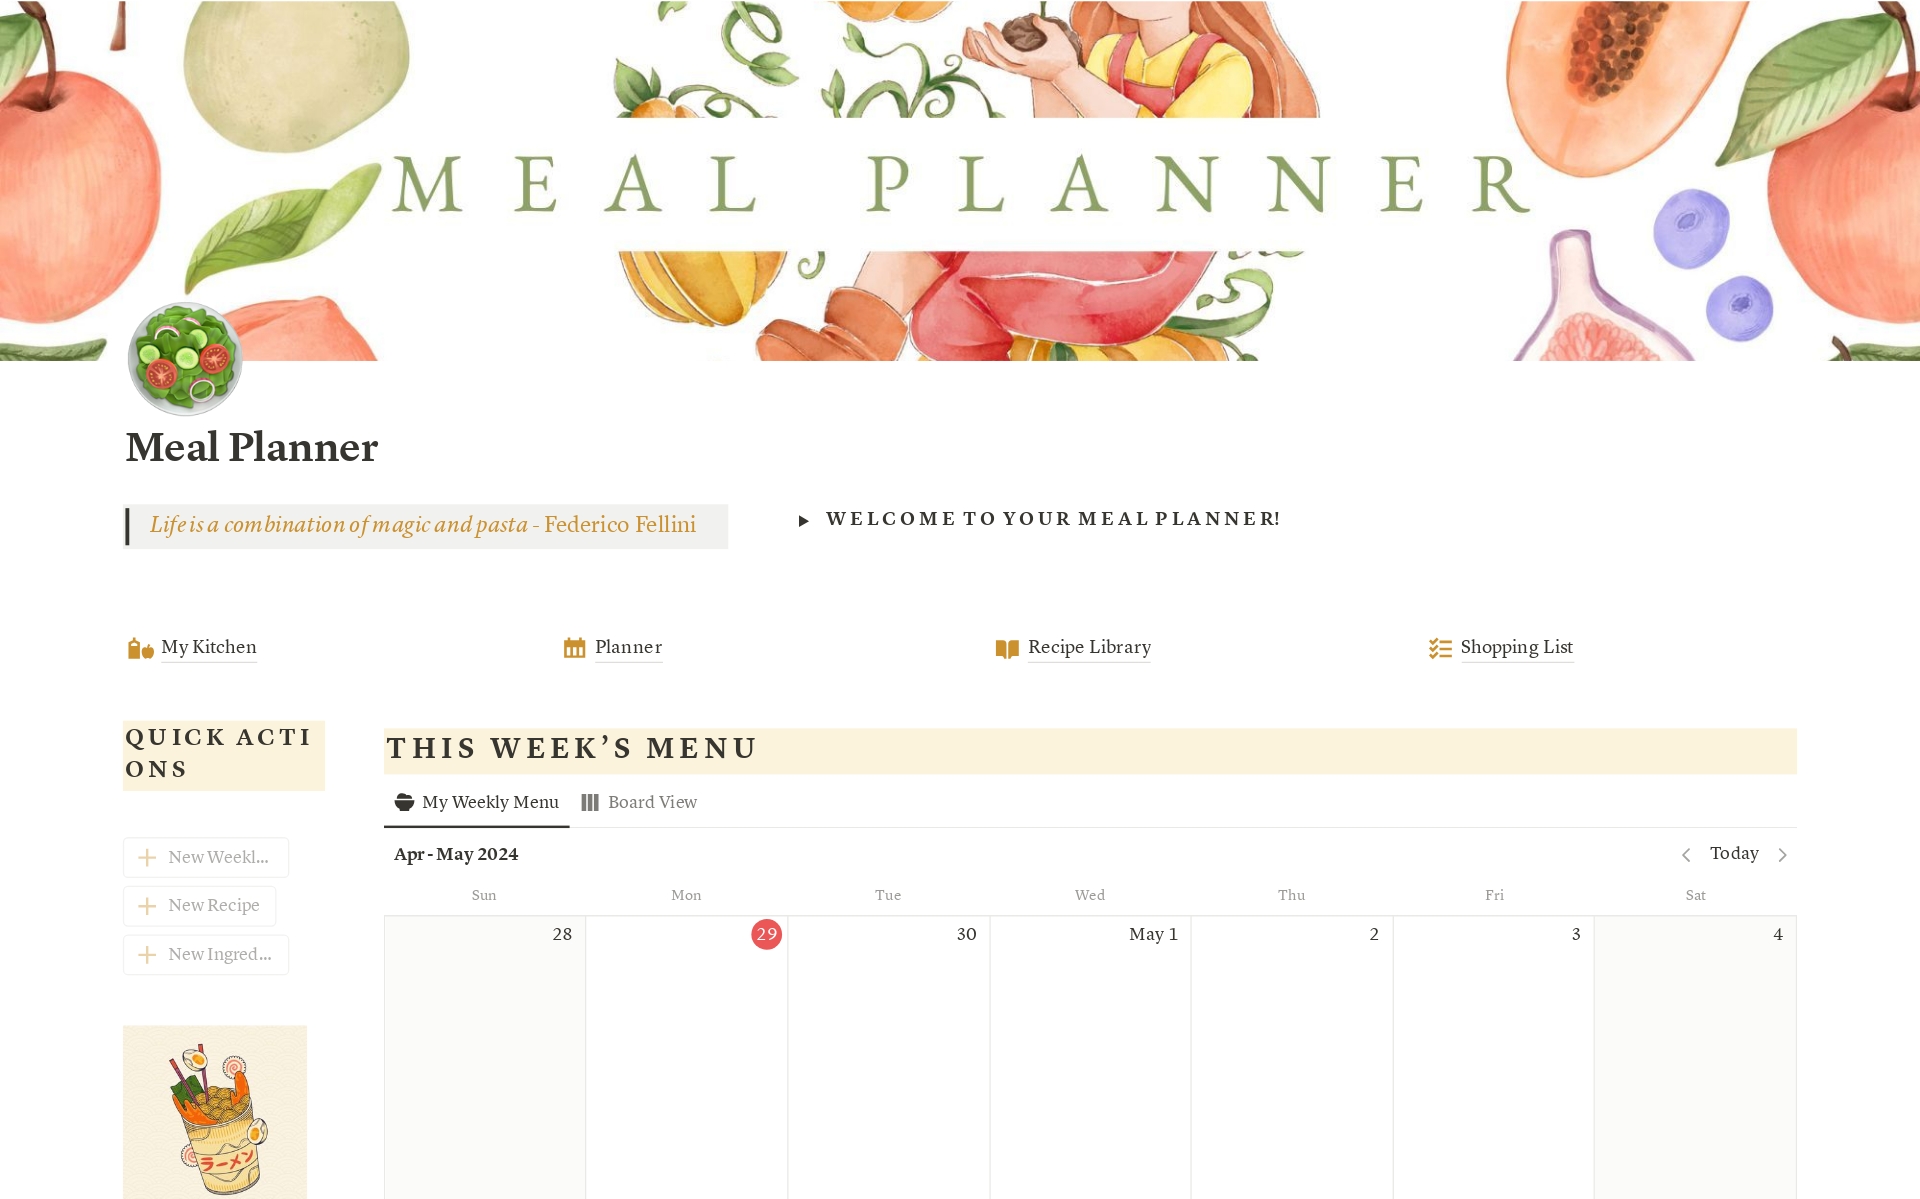 Vista previa de plantilla para Meal Planner & Recipe Library